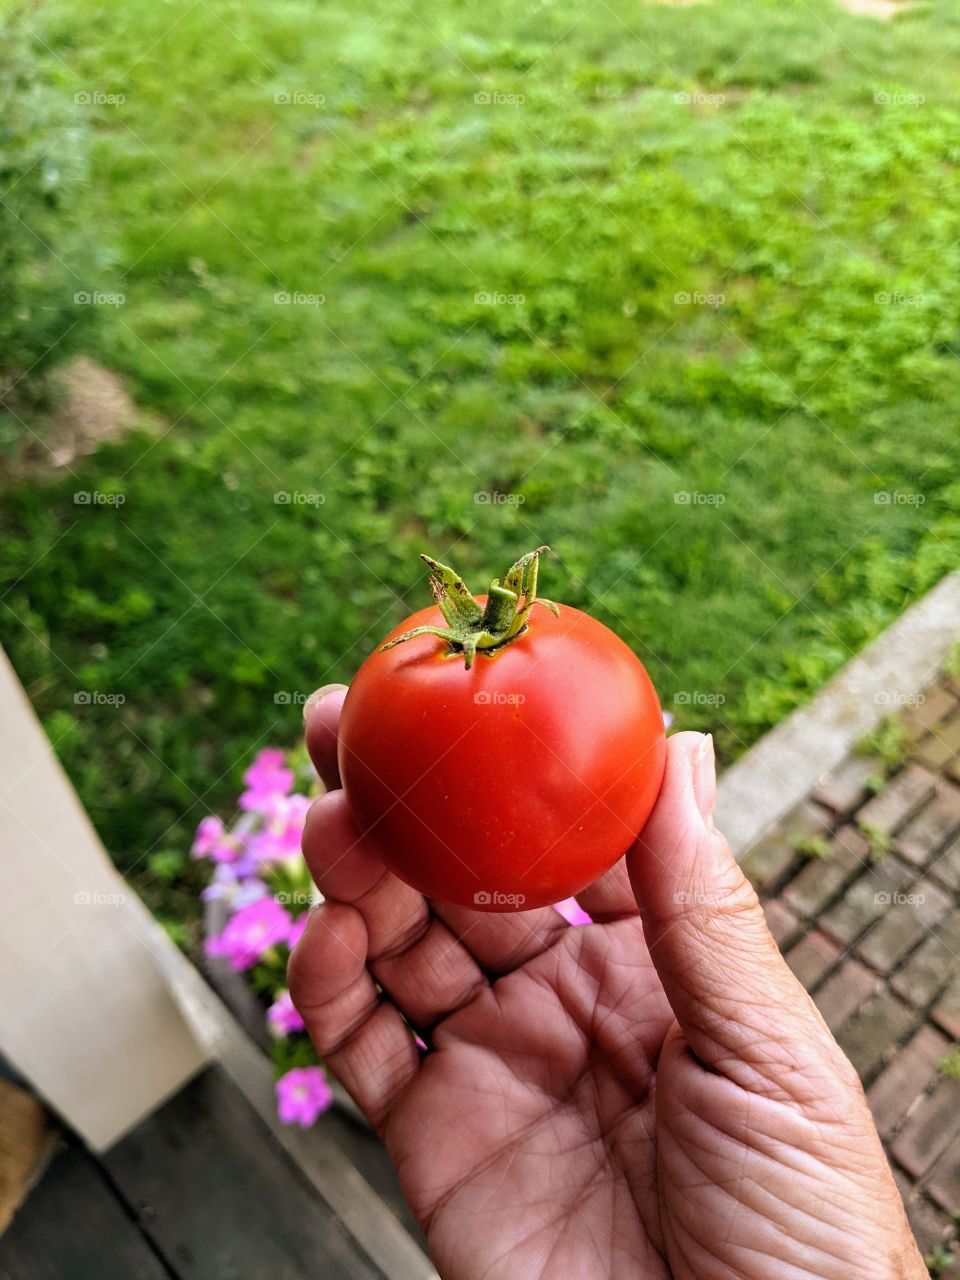 homegrown tomato